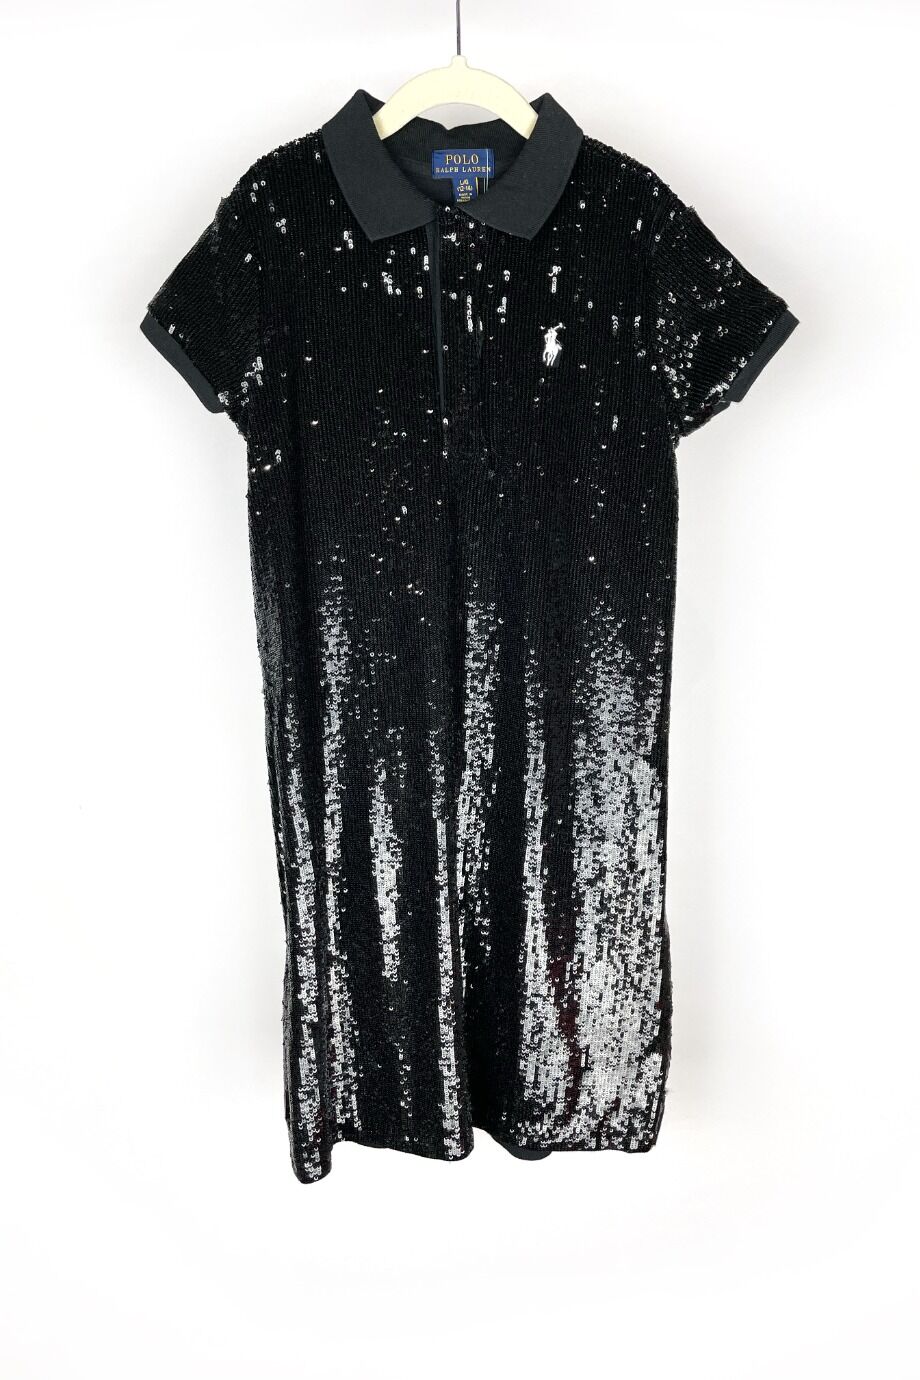 image 1 Детское платье черного цвета расшитое пайетками